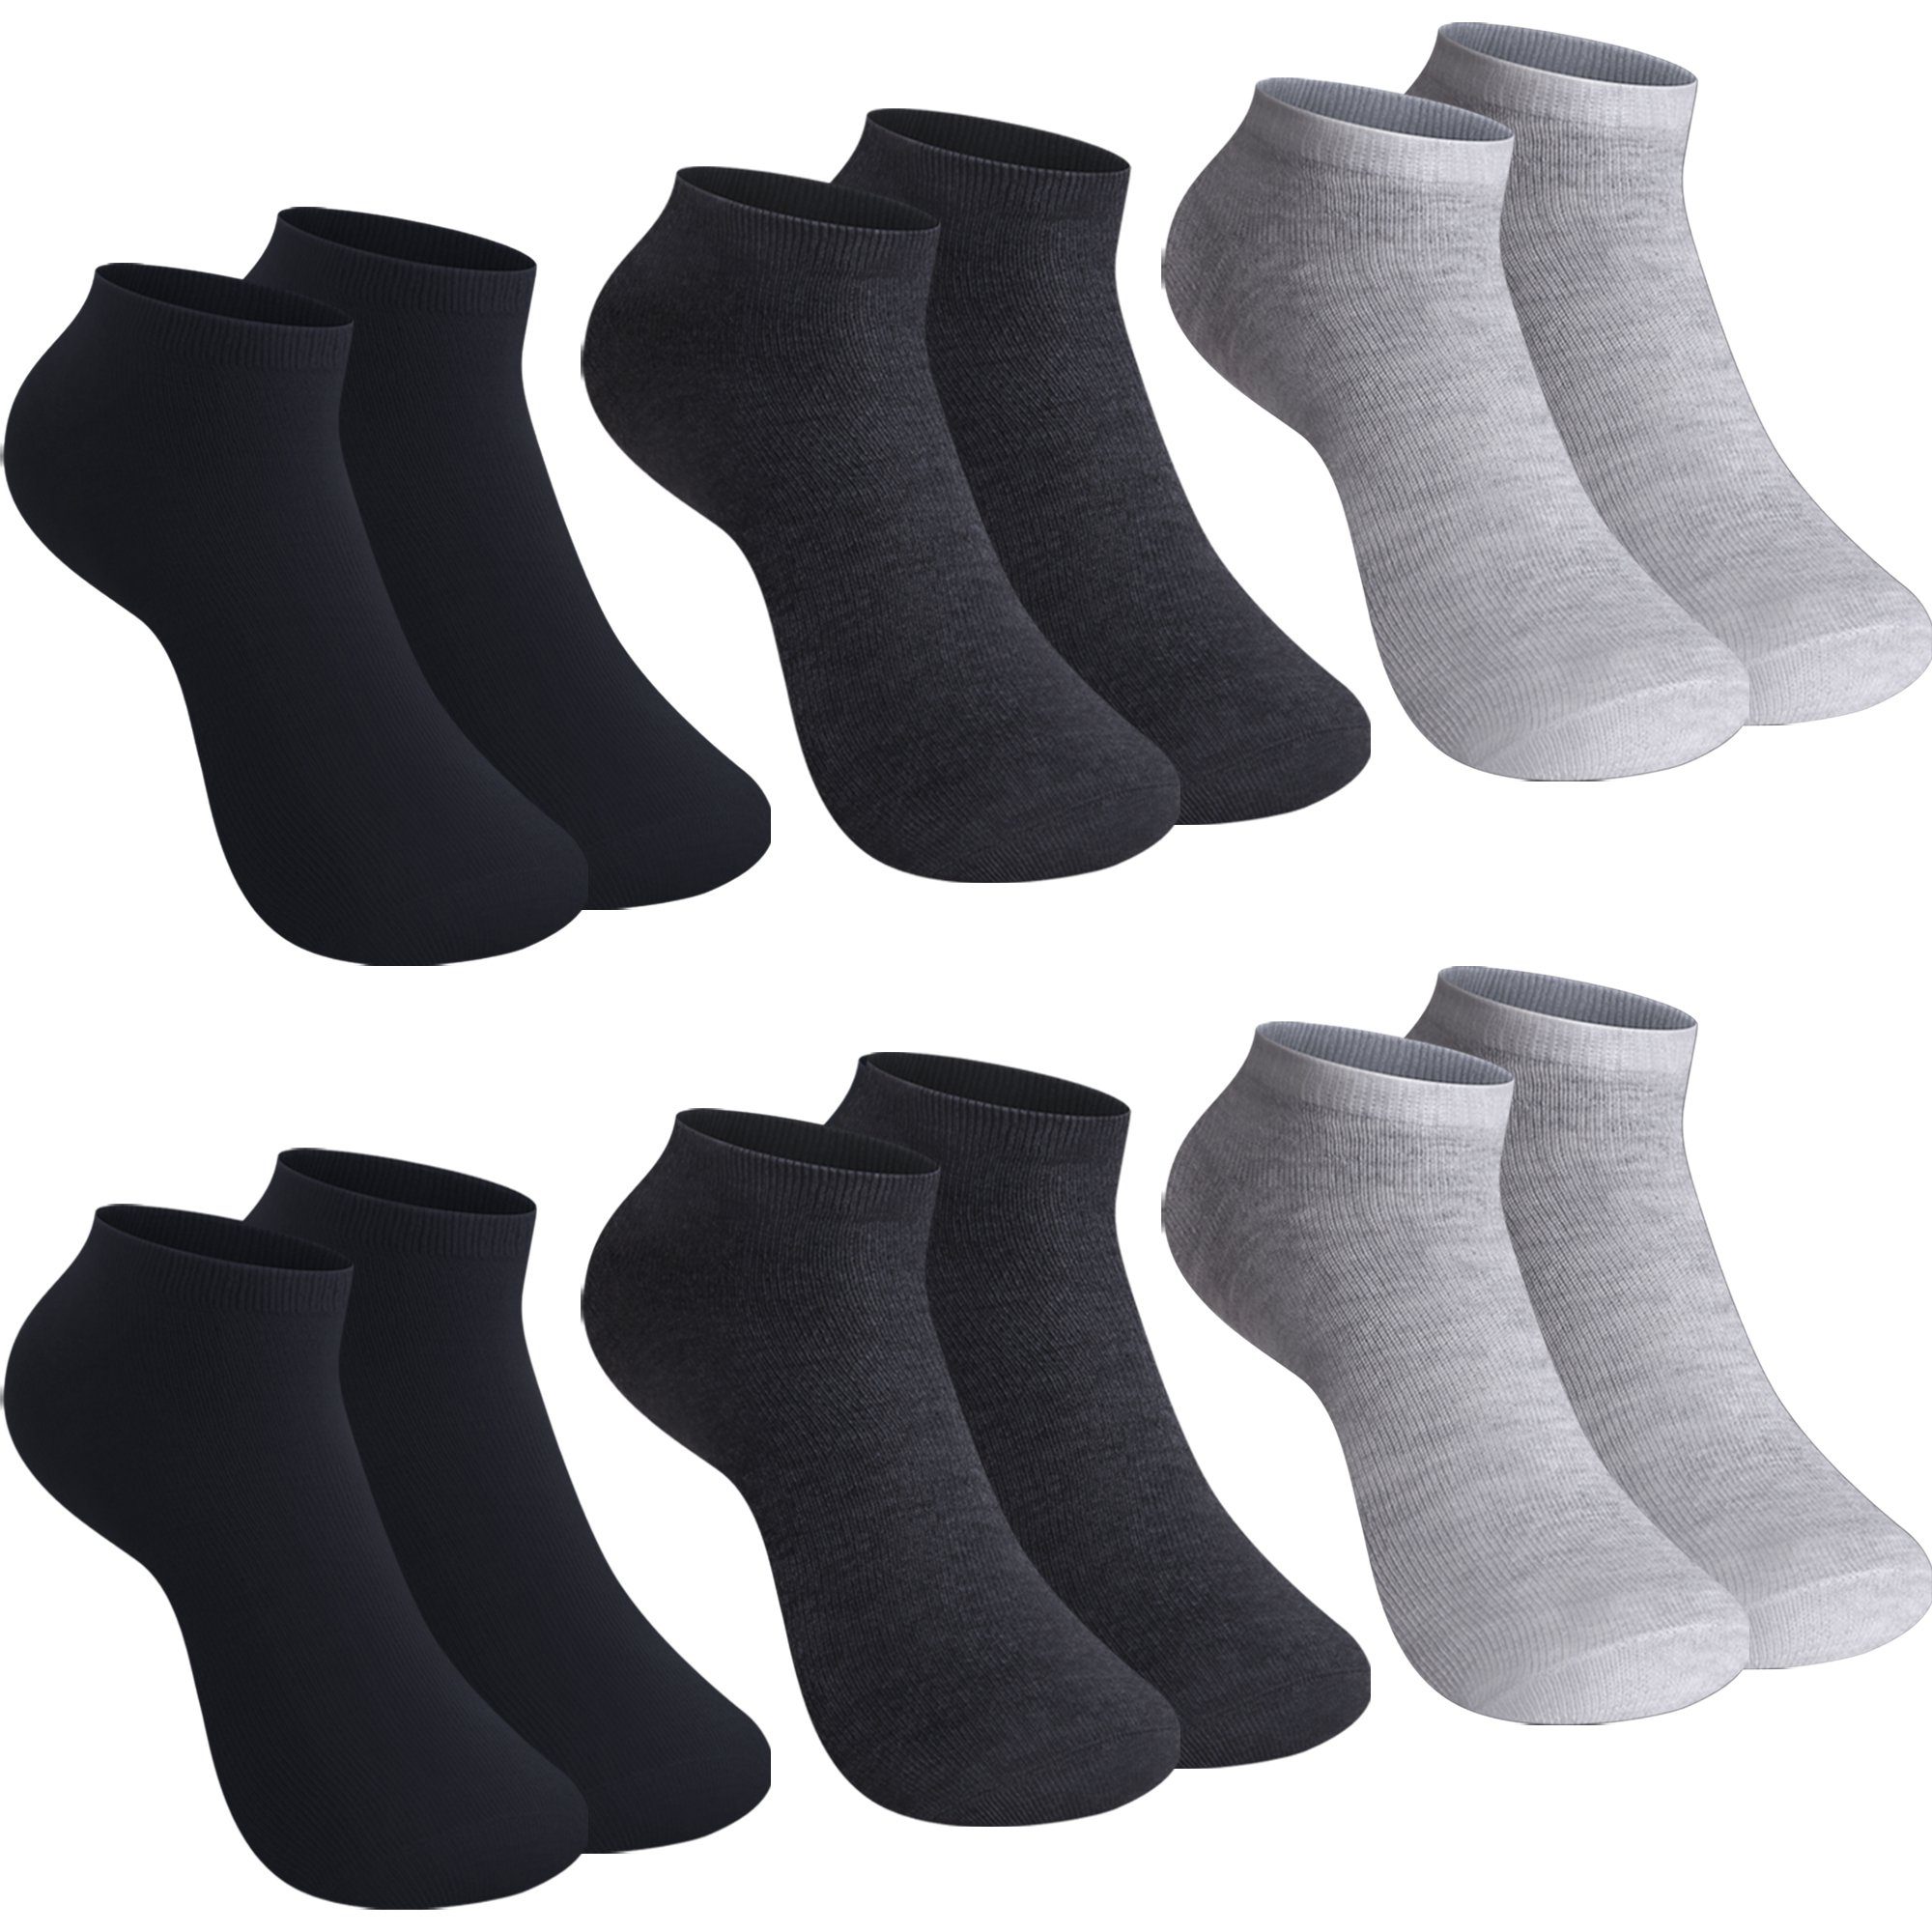 Libella Sneakersocken (12-Paar, Sneaker 10/12er 2301 Farbe Pack) Schwarz/Grau uni Paar Socken 10/12